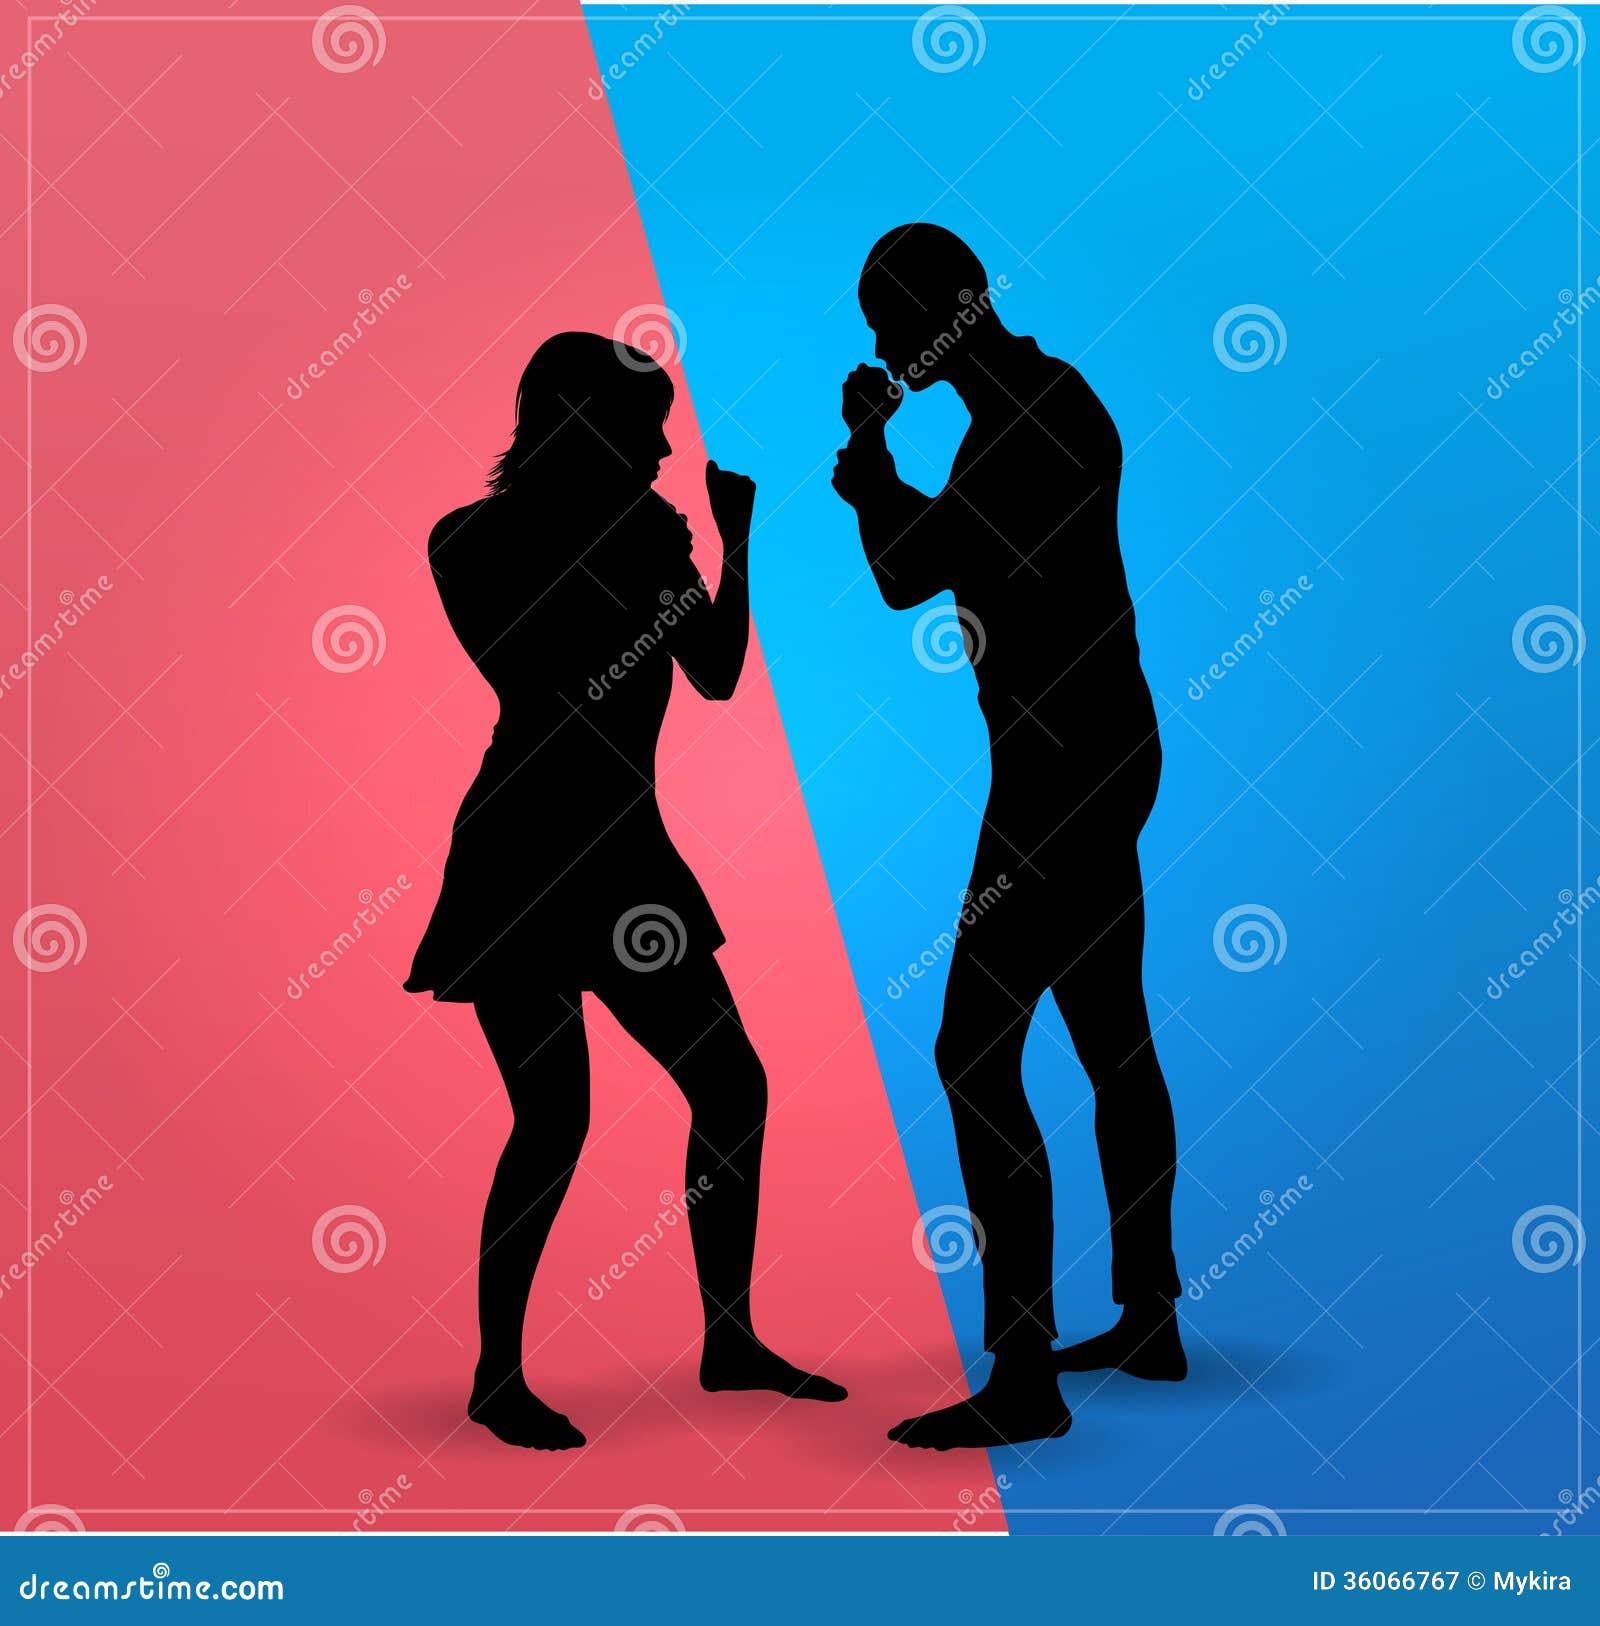 couple argue fight